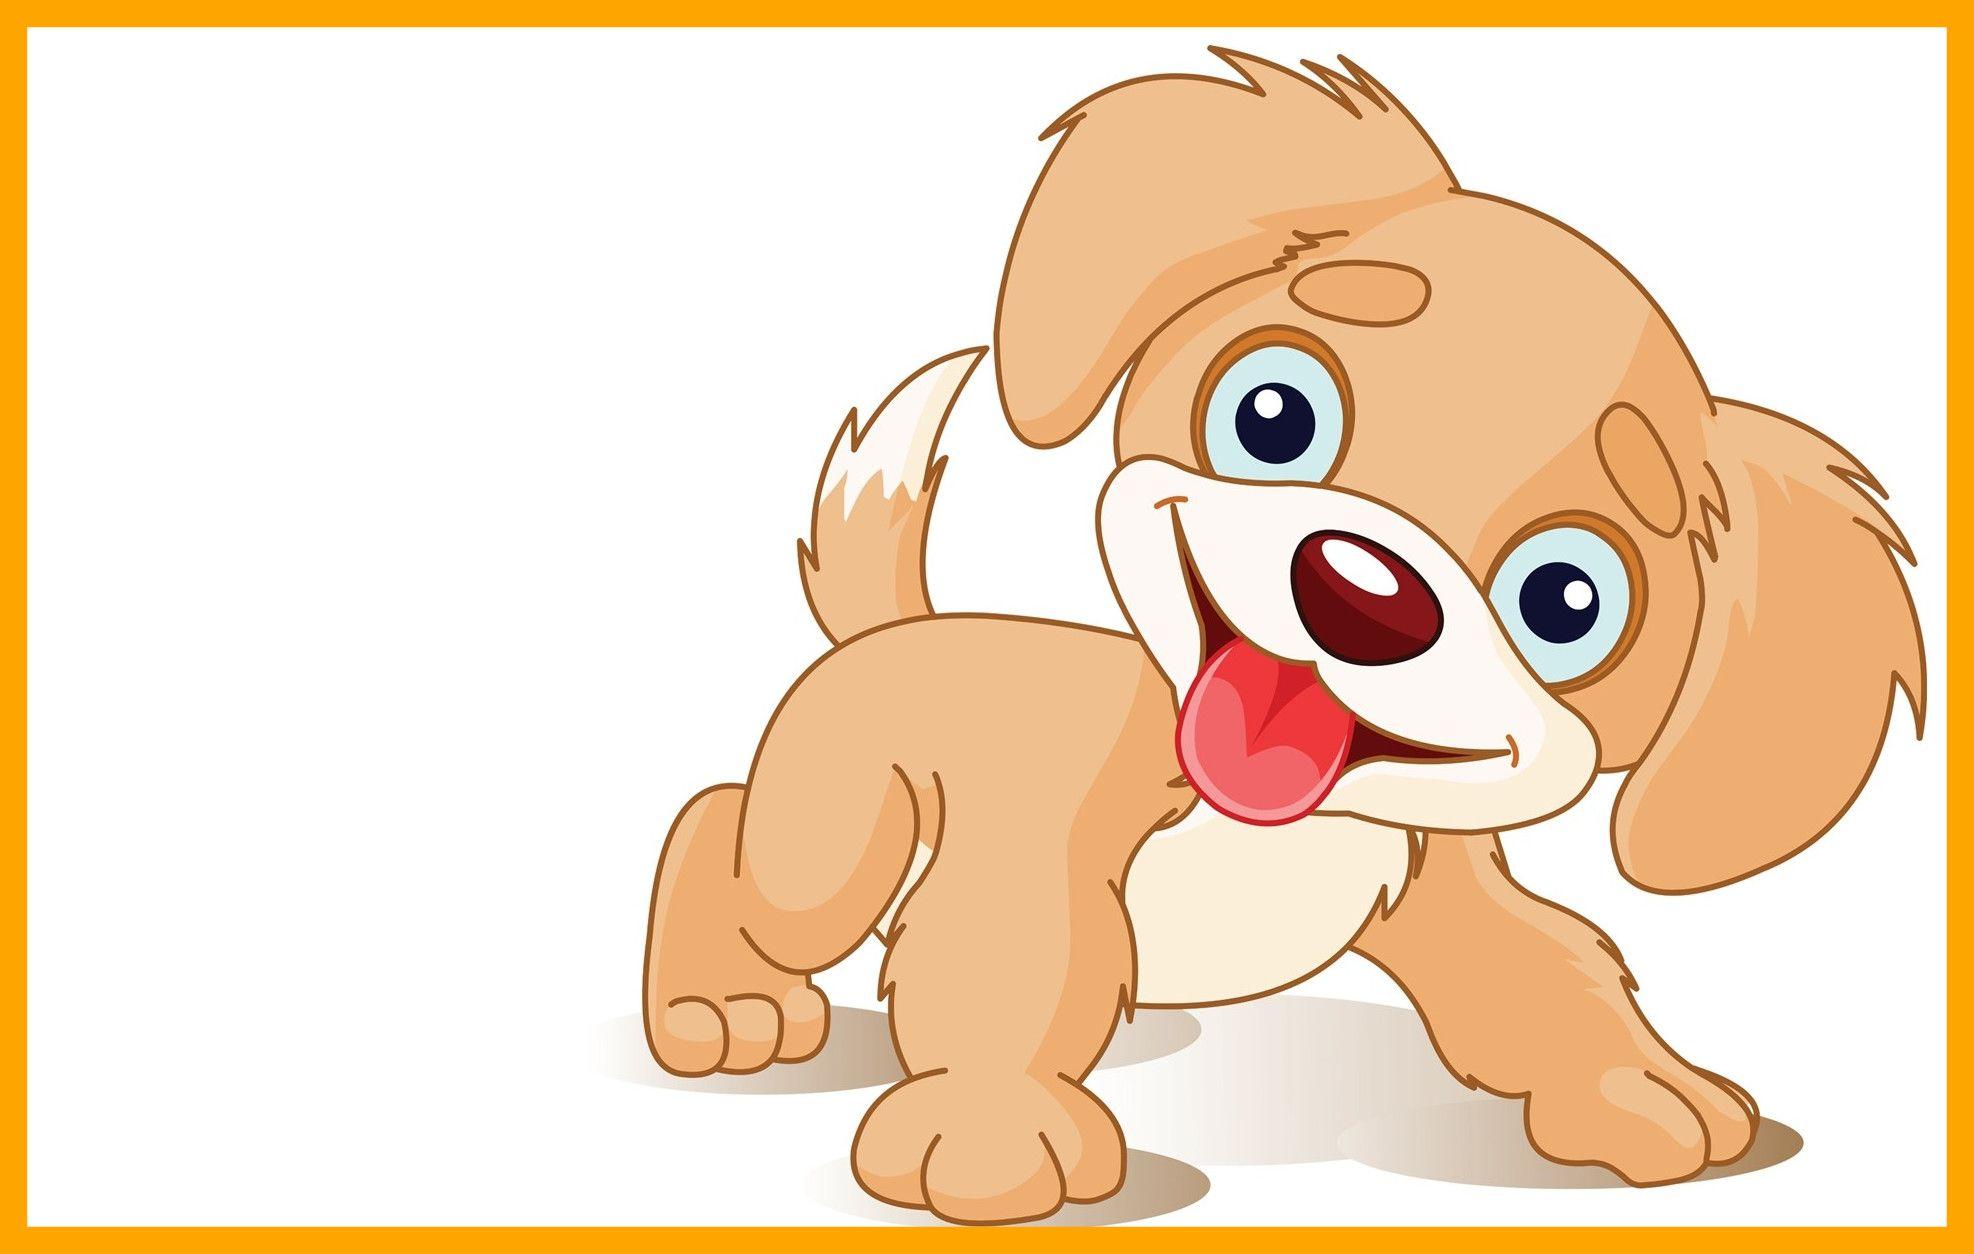 Kawaii Dog Wallpapers - Top Free Kawaii Dog Backgrounds - WallpaperAccess